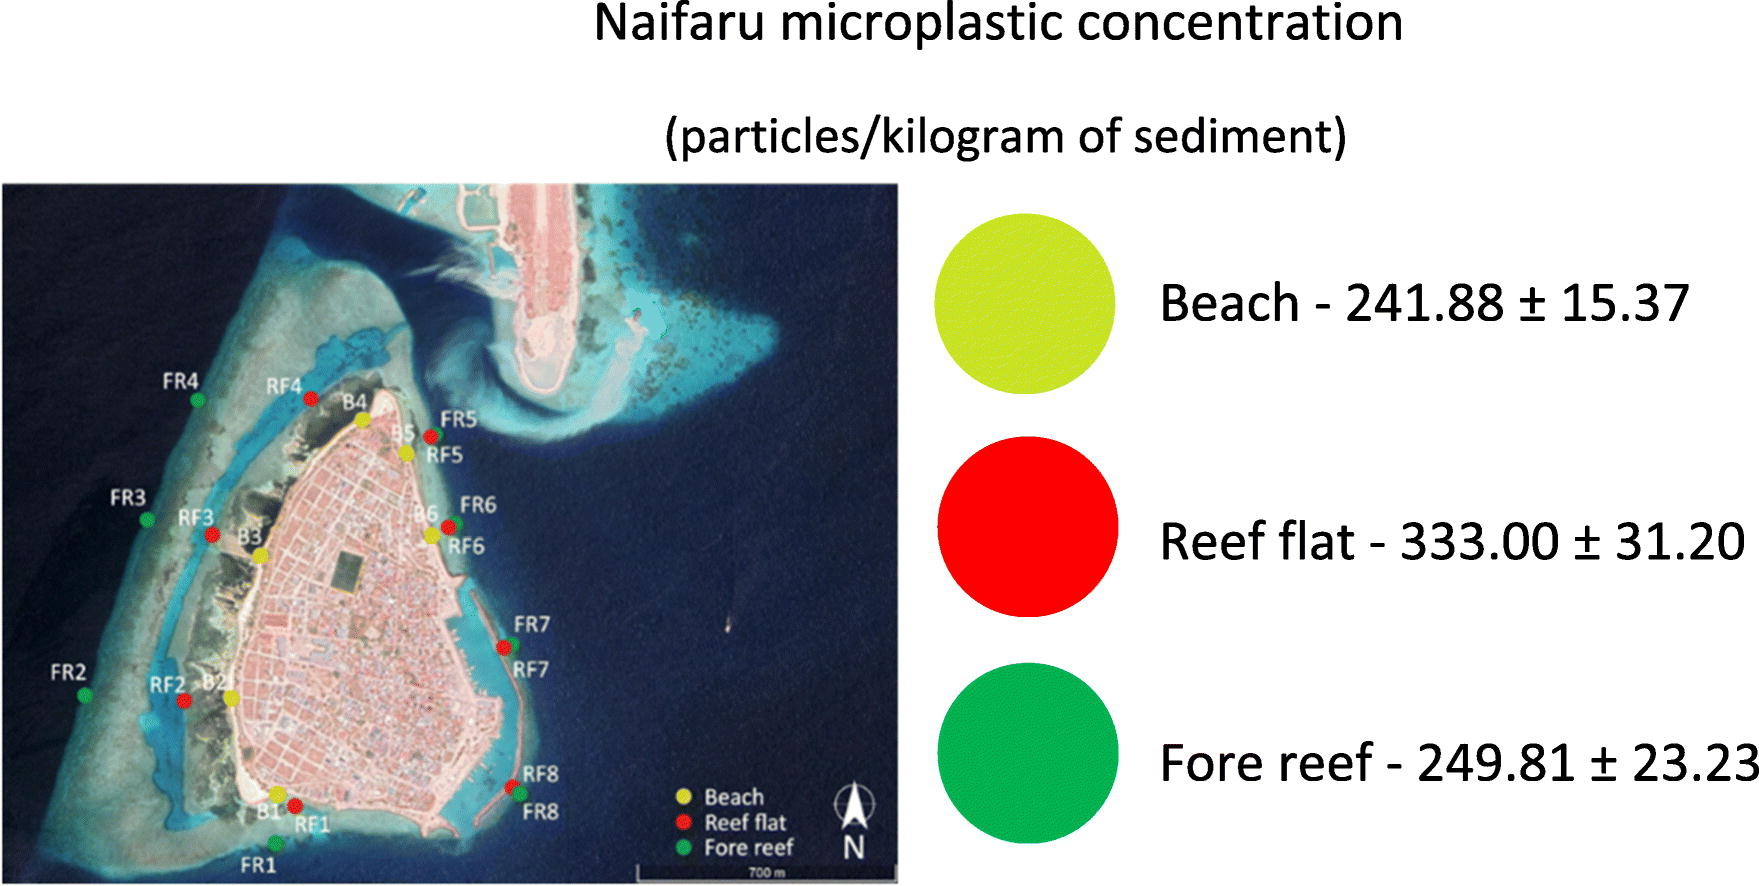 barriera maldive microplastiche